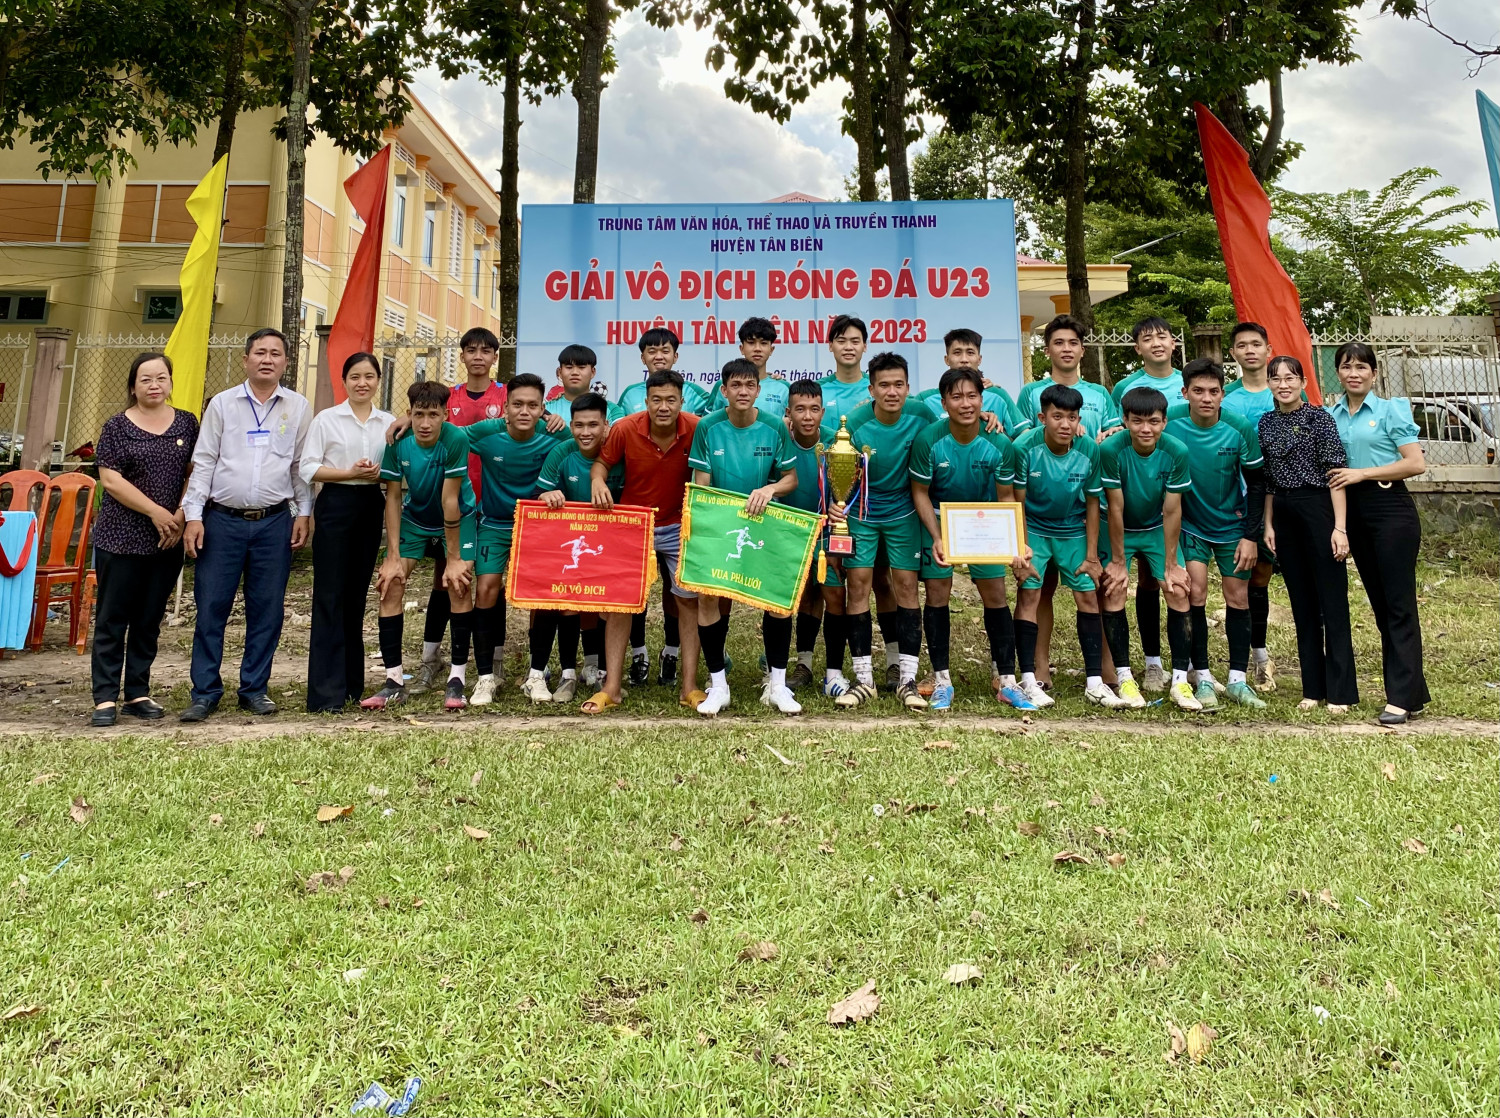 Bế mạc giải giải bóng đá U23 huyện Tân Biên năm 2023